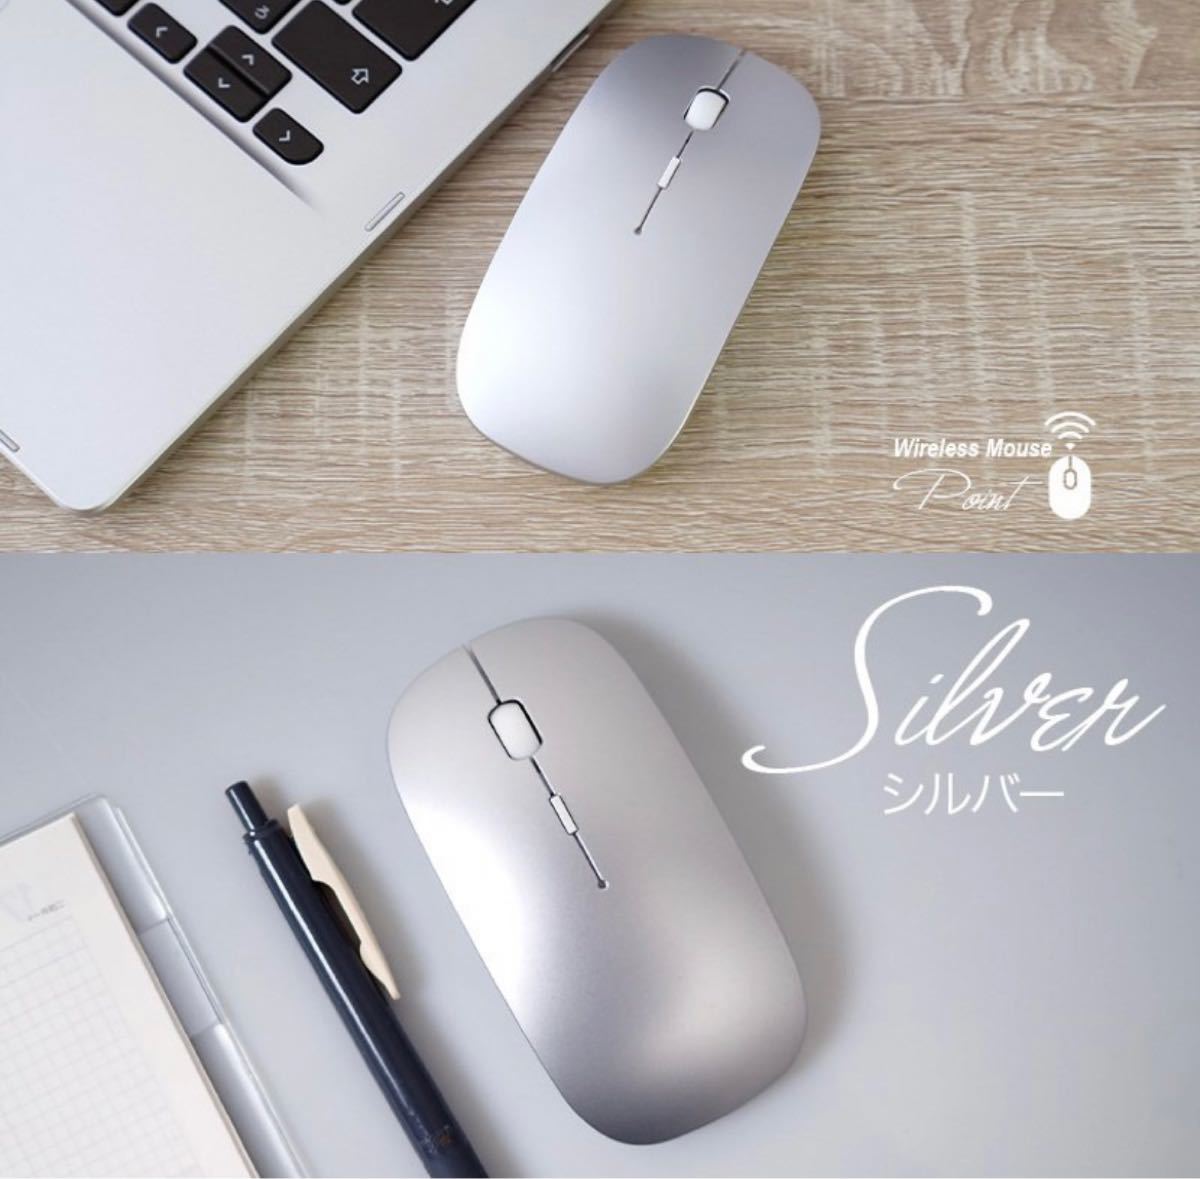 シルバー ワイヤレスマウス 充電式 無線マウス 静音 薄型